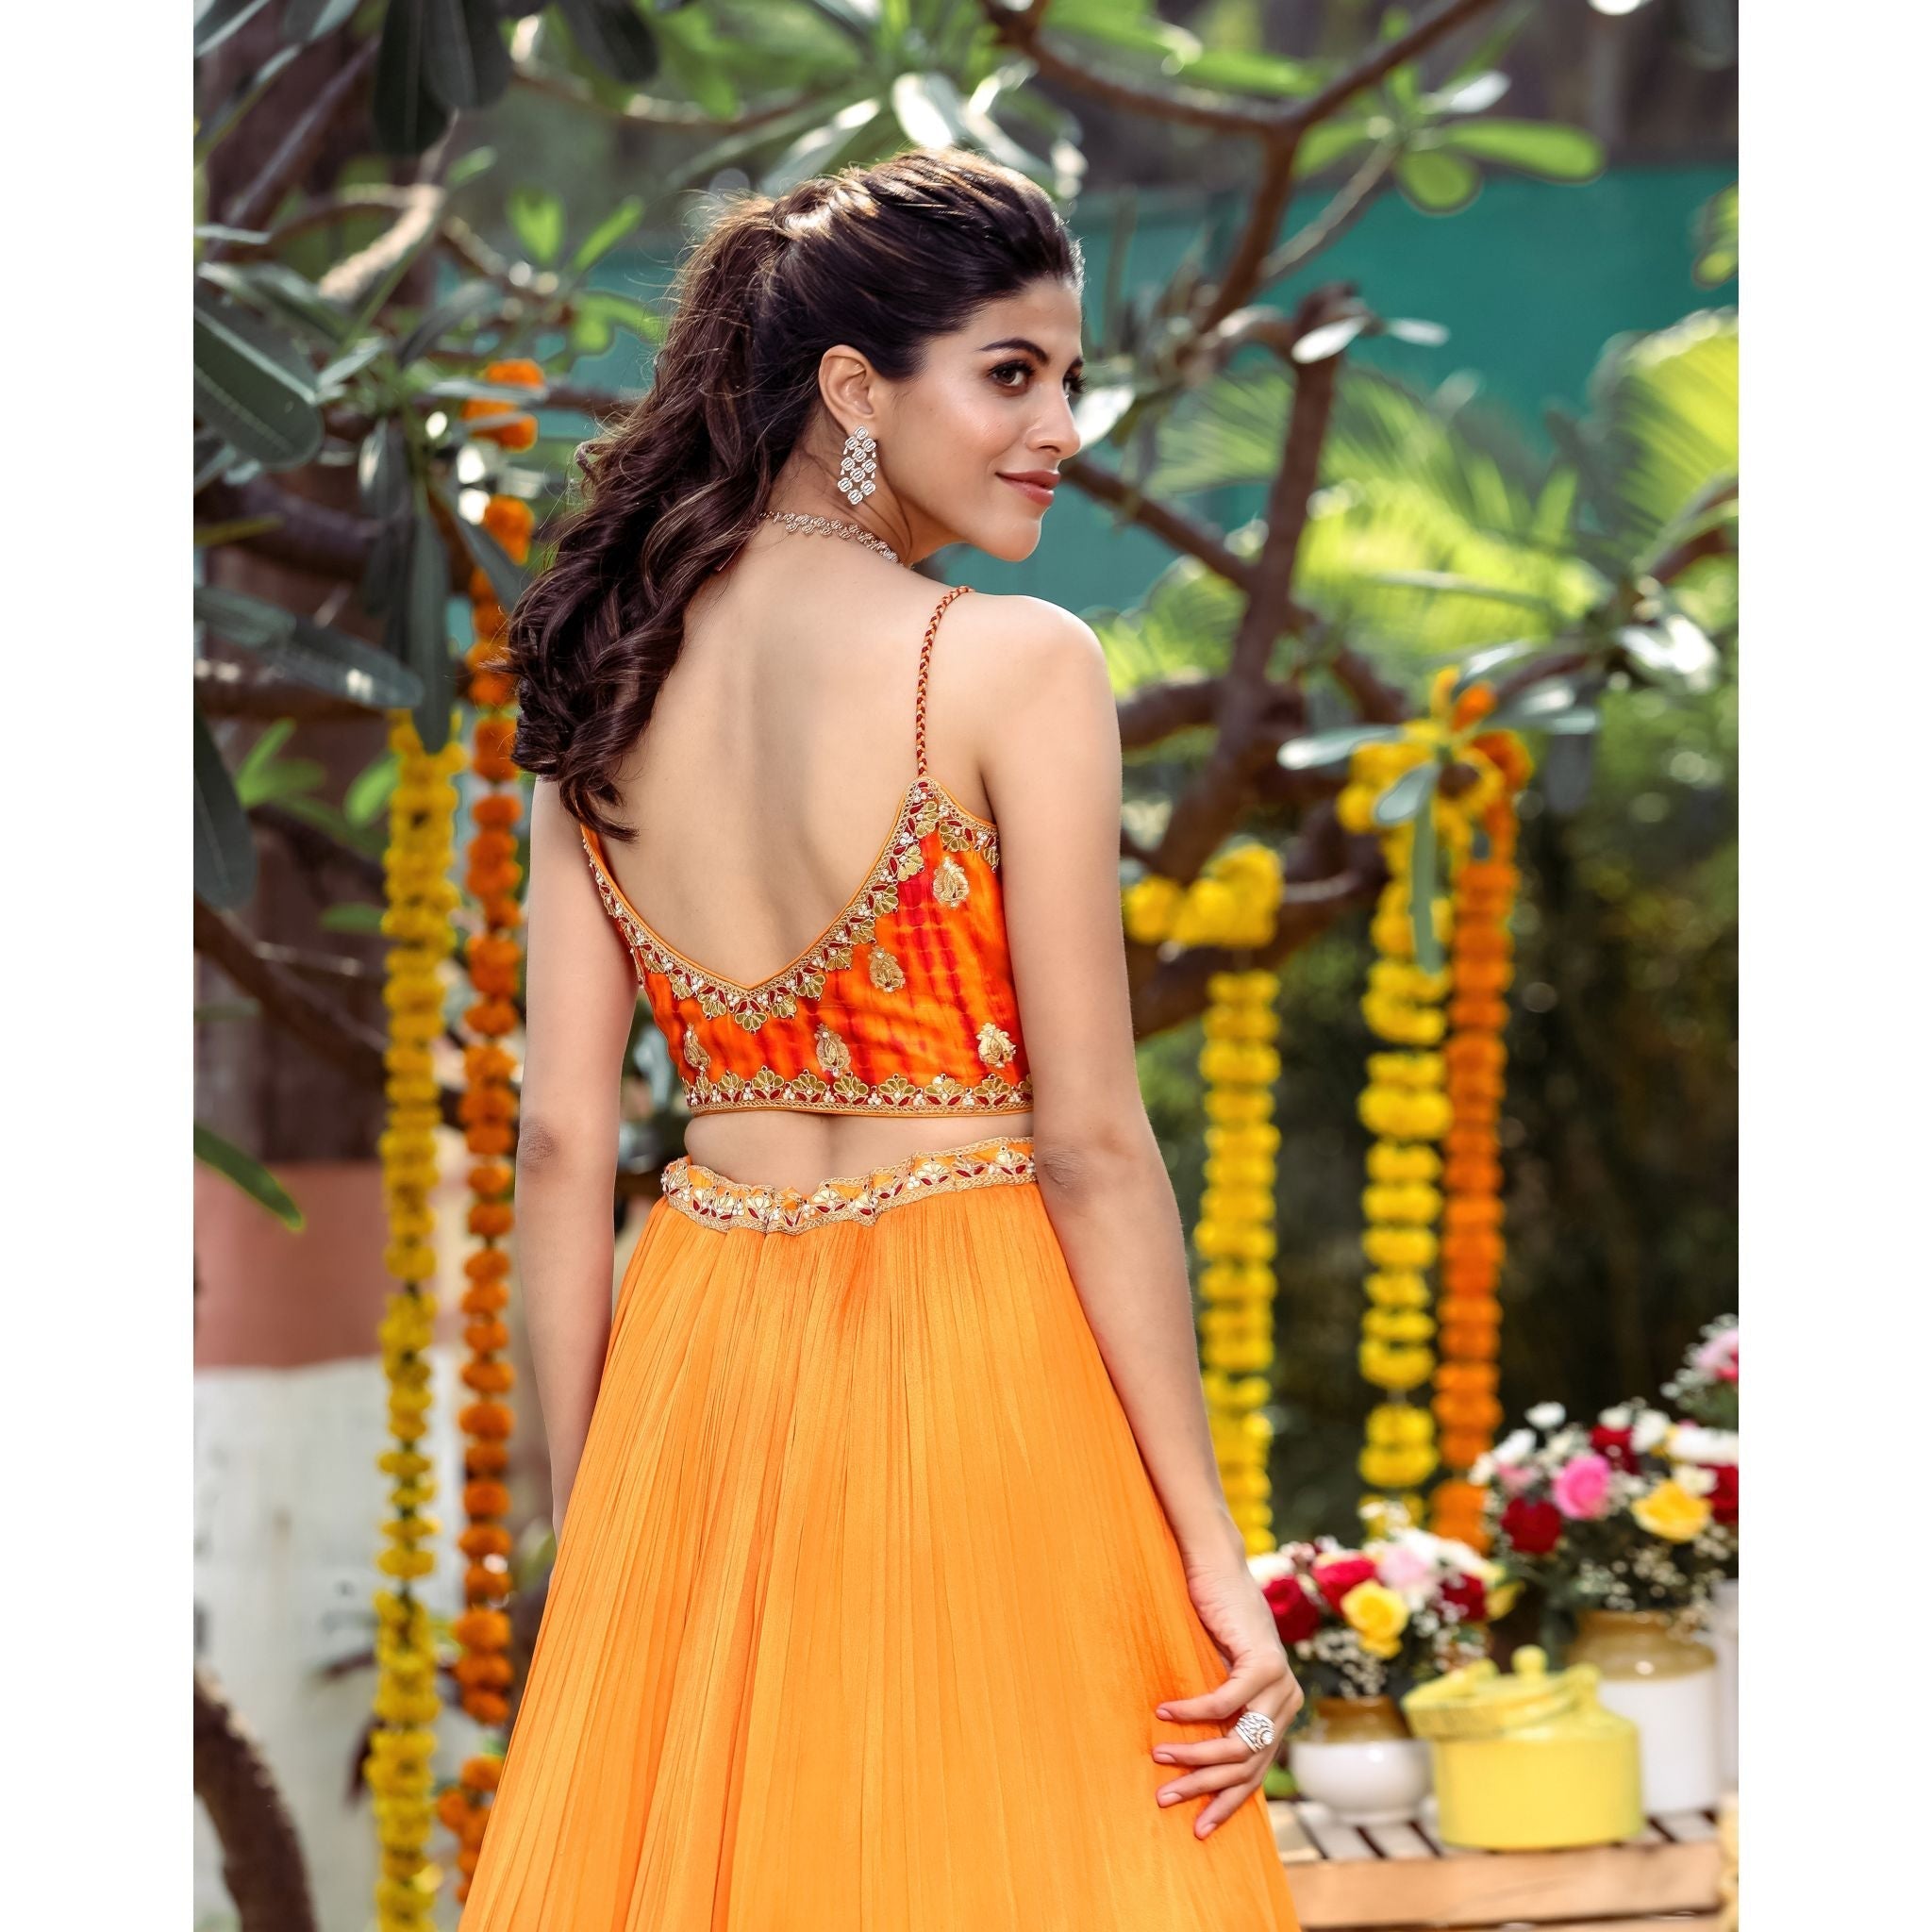 Tangerine Tie-Dye Lehenga Set - Indian Designer Bridal Wedding Outfit